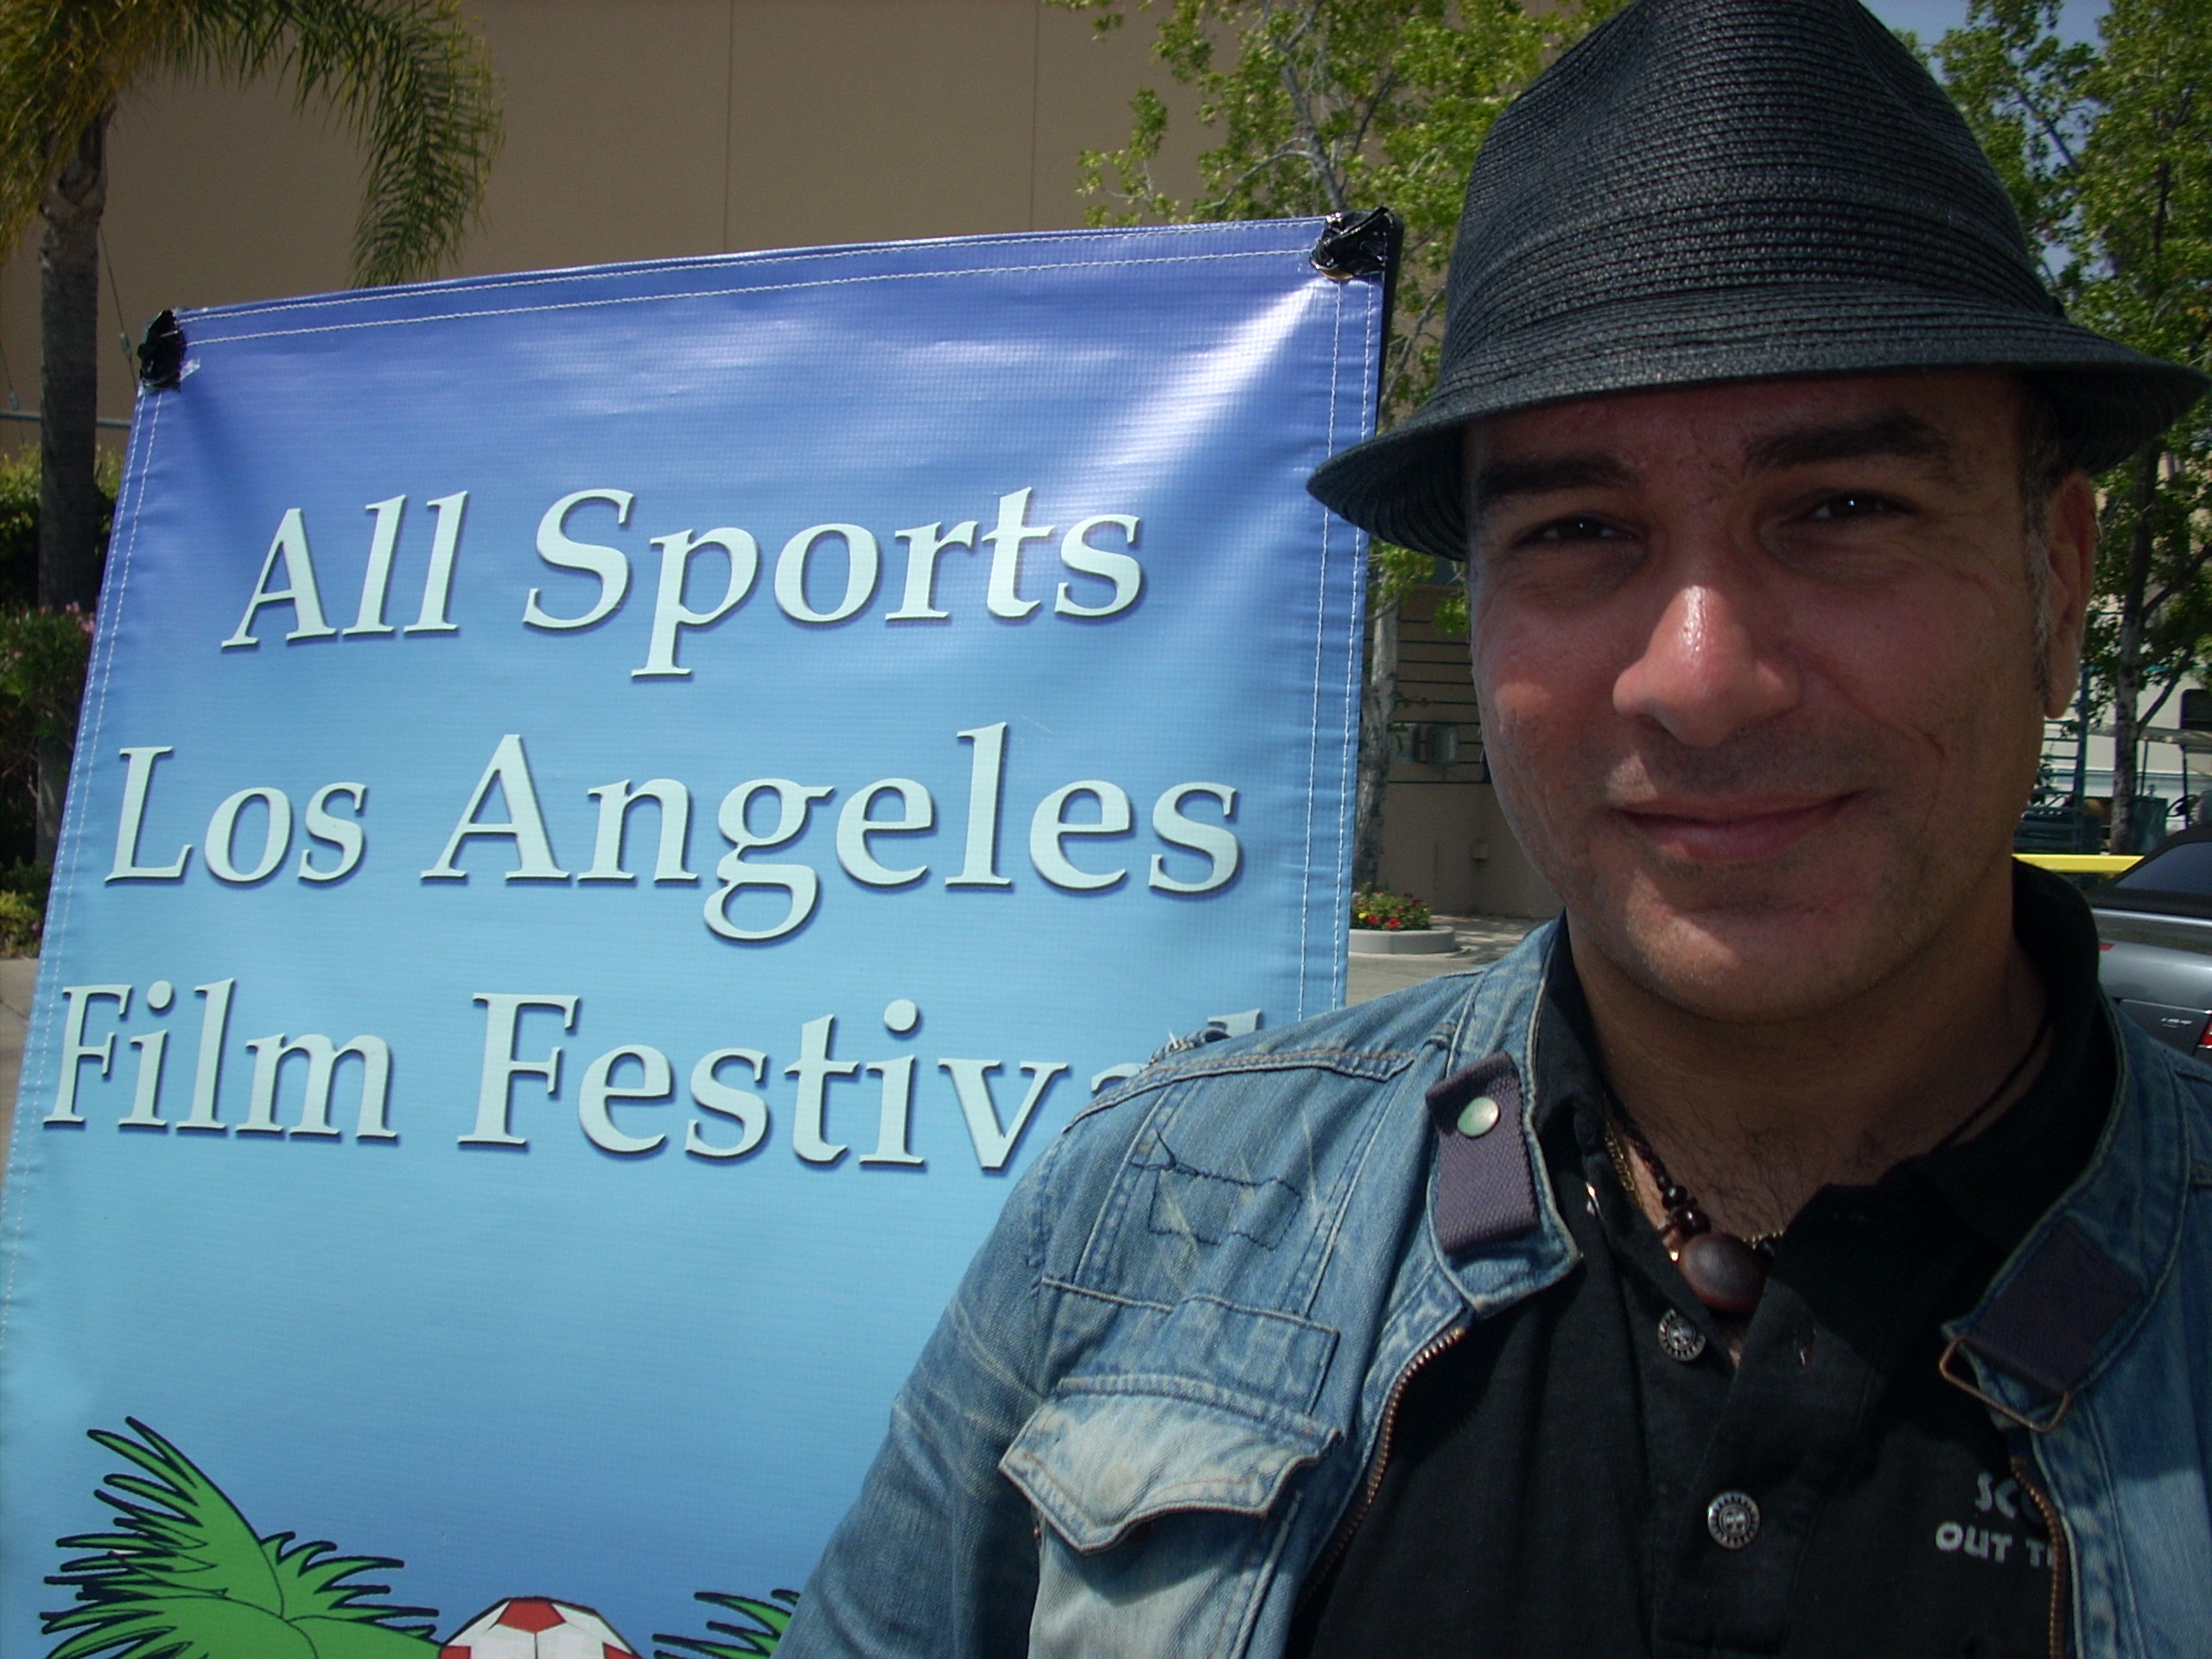 Graziano Molteni at ALL SPORTS LOS ANGELES FILM FESTIVAL 2010